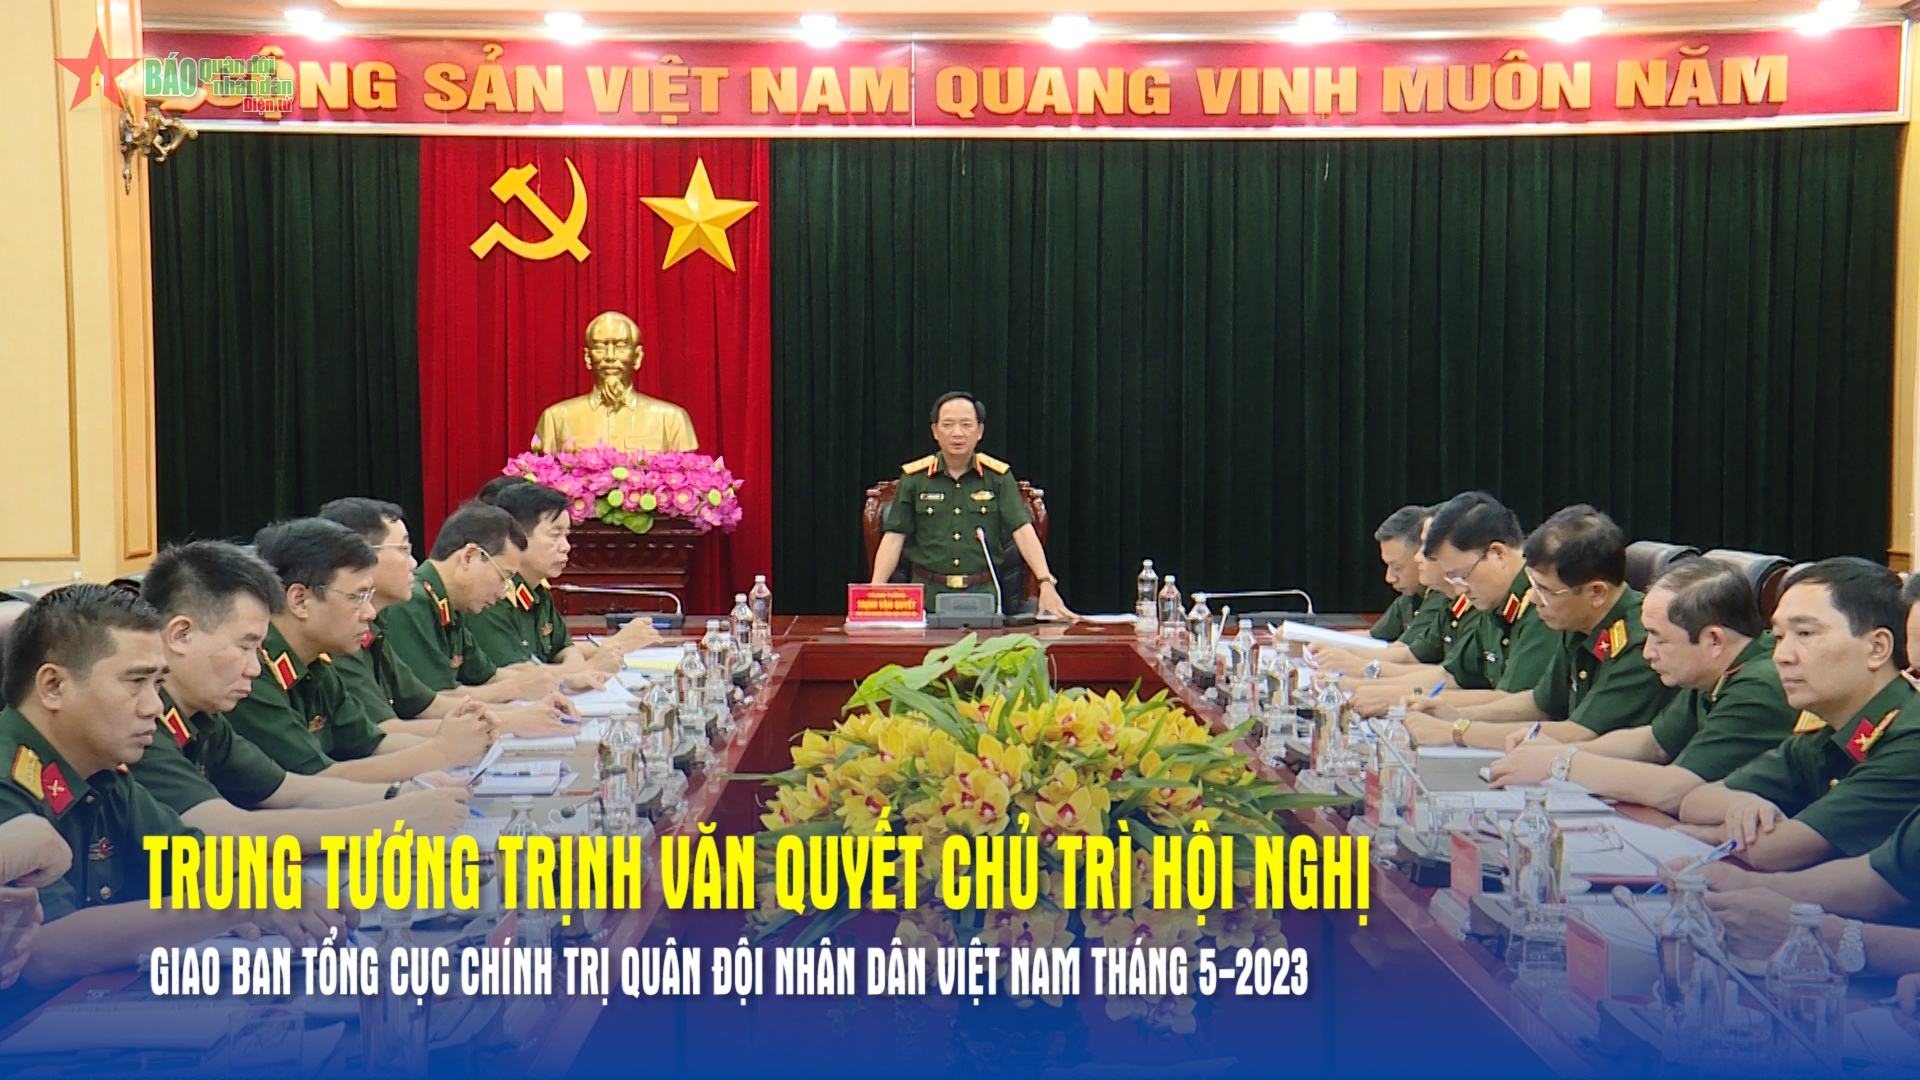 Trung tướng Trịnh Văn Quyết chủ trì hội nghị giao ban Tổng cục Chính trị Quân đội nhân dân Việt Nam tháng 5-2023